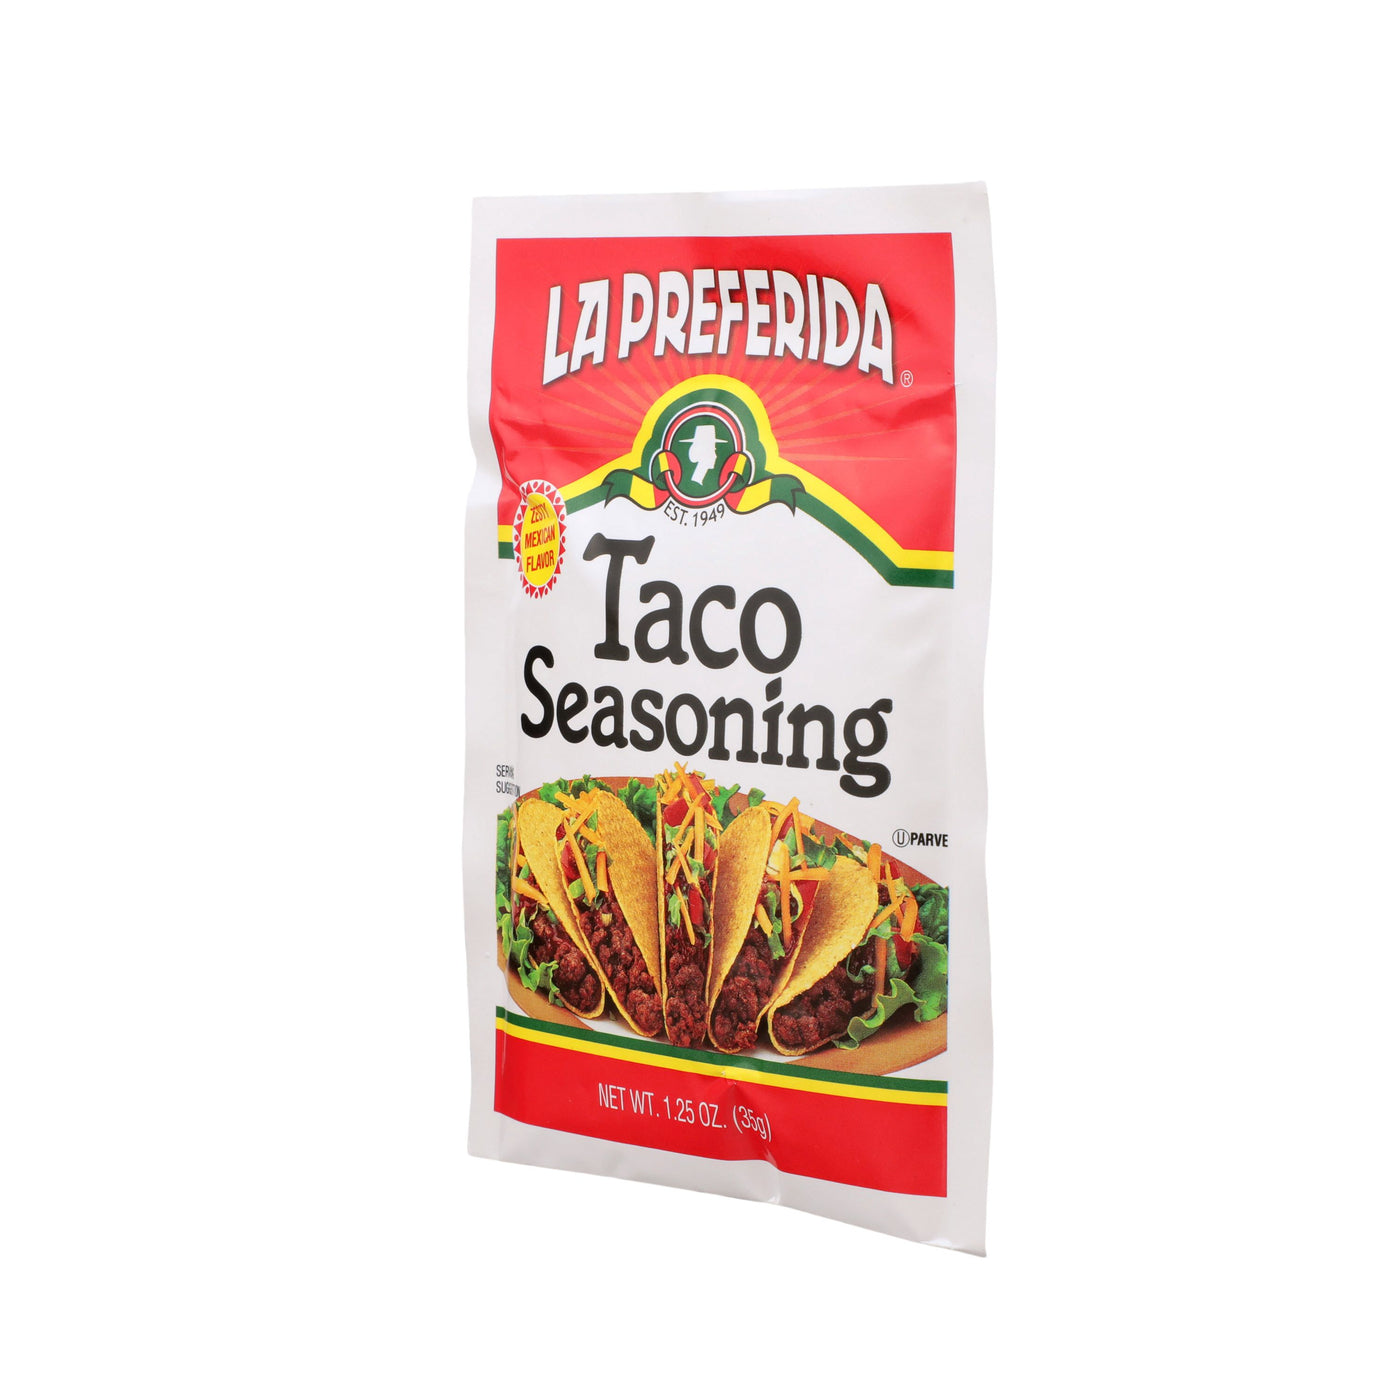 Casa Mamita Less Sodium Taco Seasoning Mix 1 oz